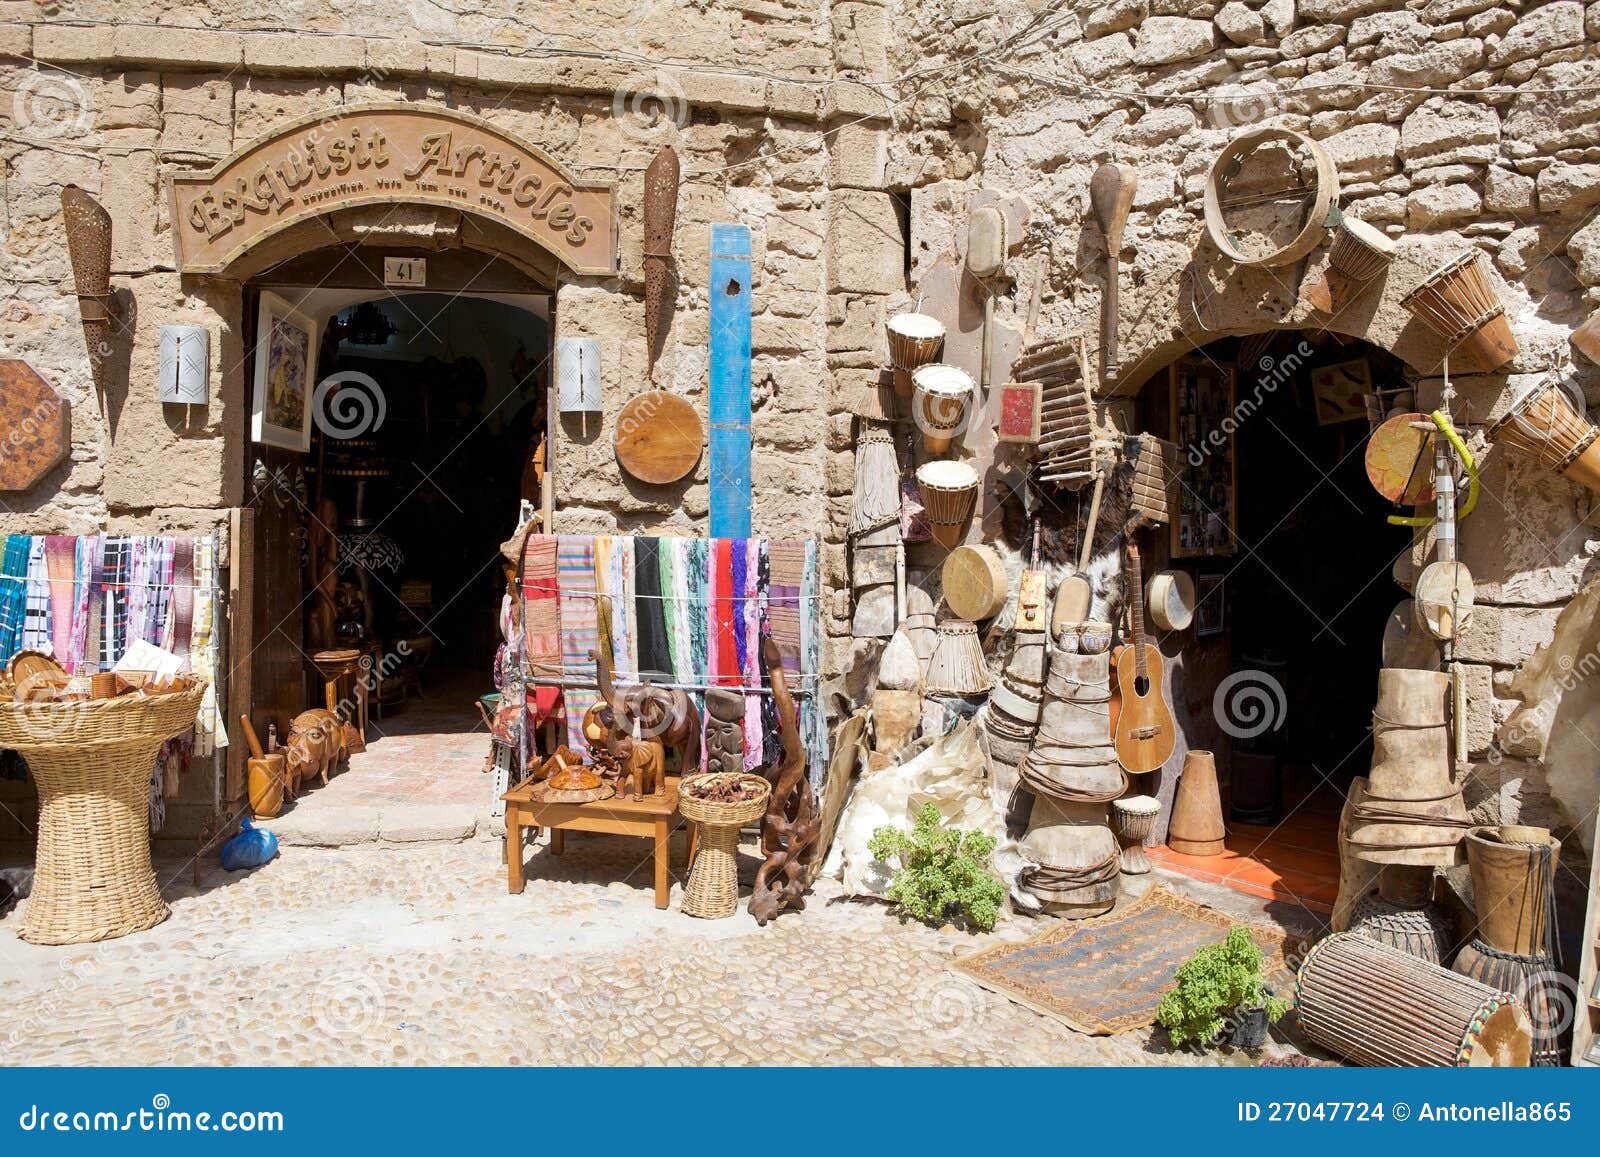 Магазины на Essaouira. Марокко: магазины среди стен города Essaouira укрепили город. Essaouira город в западной морокканской хозяйственной зоне Marrakesh-Tensift-Al Haouz, на атлантическом свободном полете. С XVI век, город также был знан своим португальским именем Mogador или Mogadore. Имя Berber значит стену, справку к крепостным стенам которые первоначально заключили город.